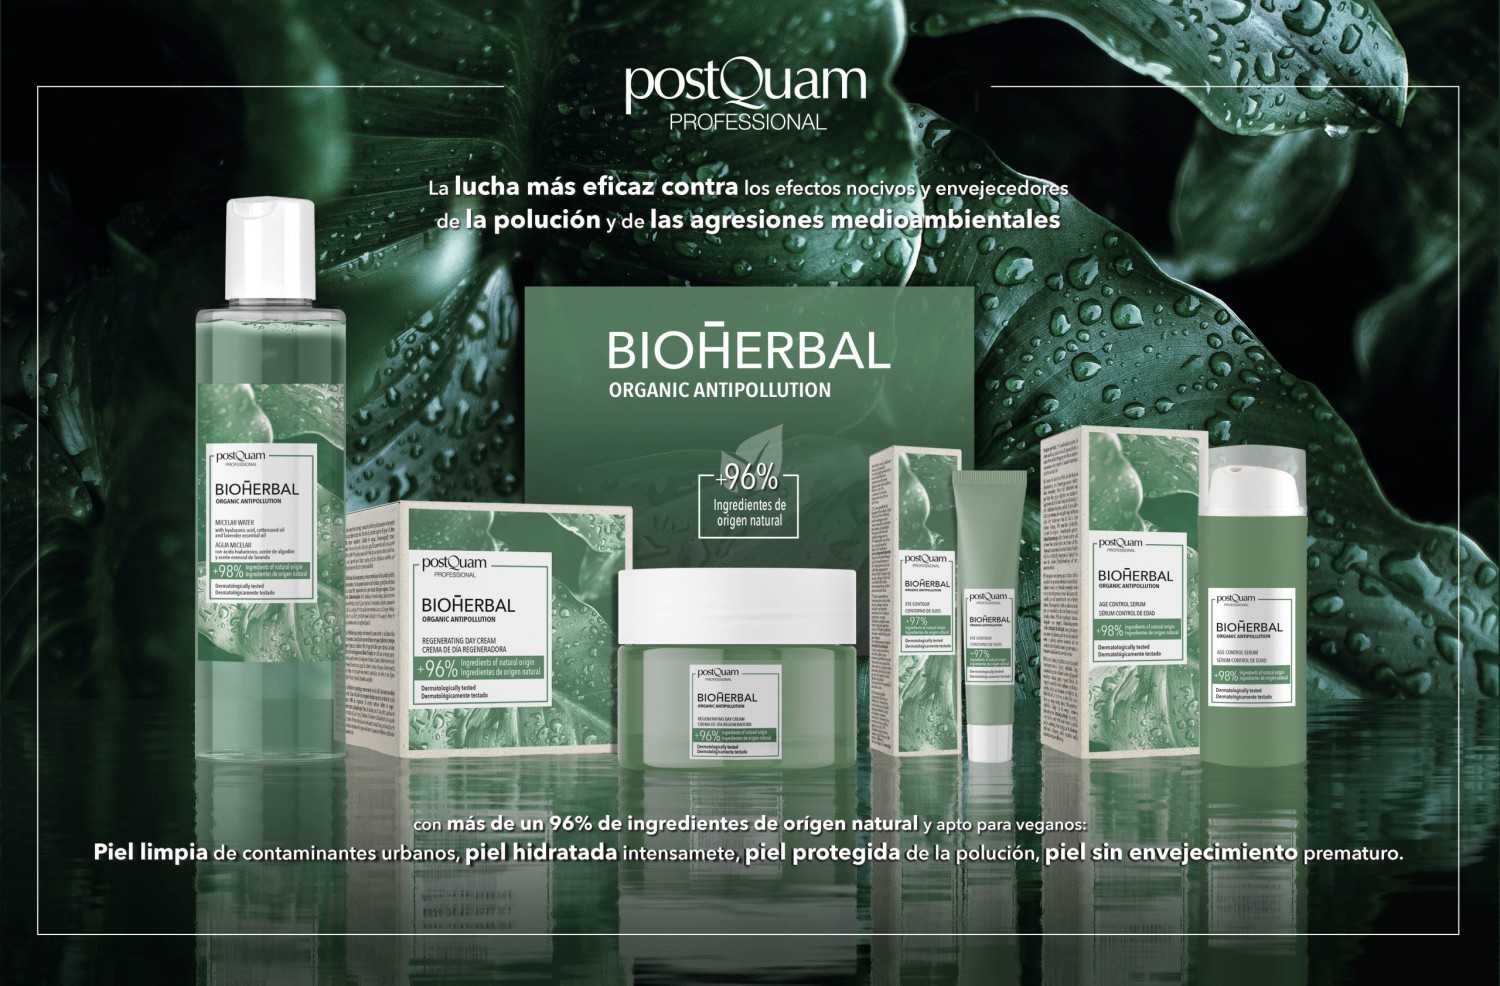 PostQuam presenta su línea facial BIOHERBAL Organic Antipollution